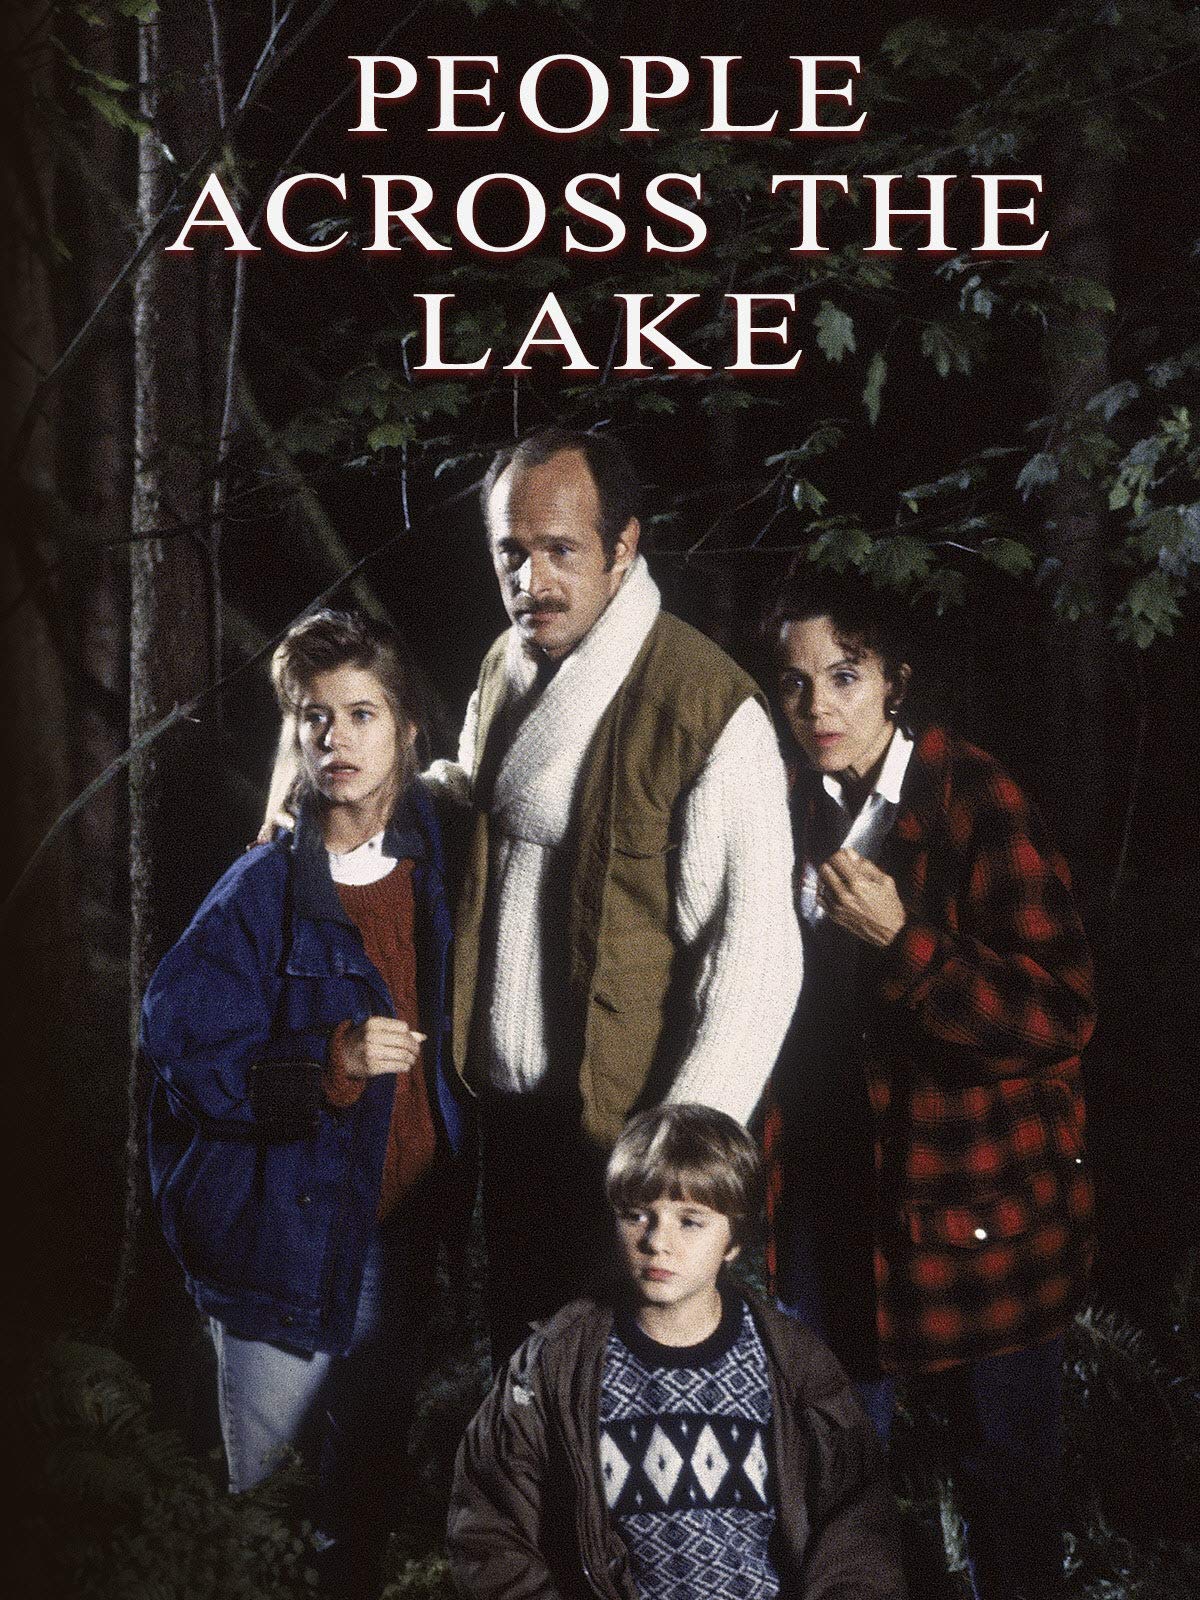 The People Across the Lake (1988) starring Valerie Harper on DVD on DVD